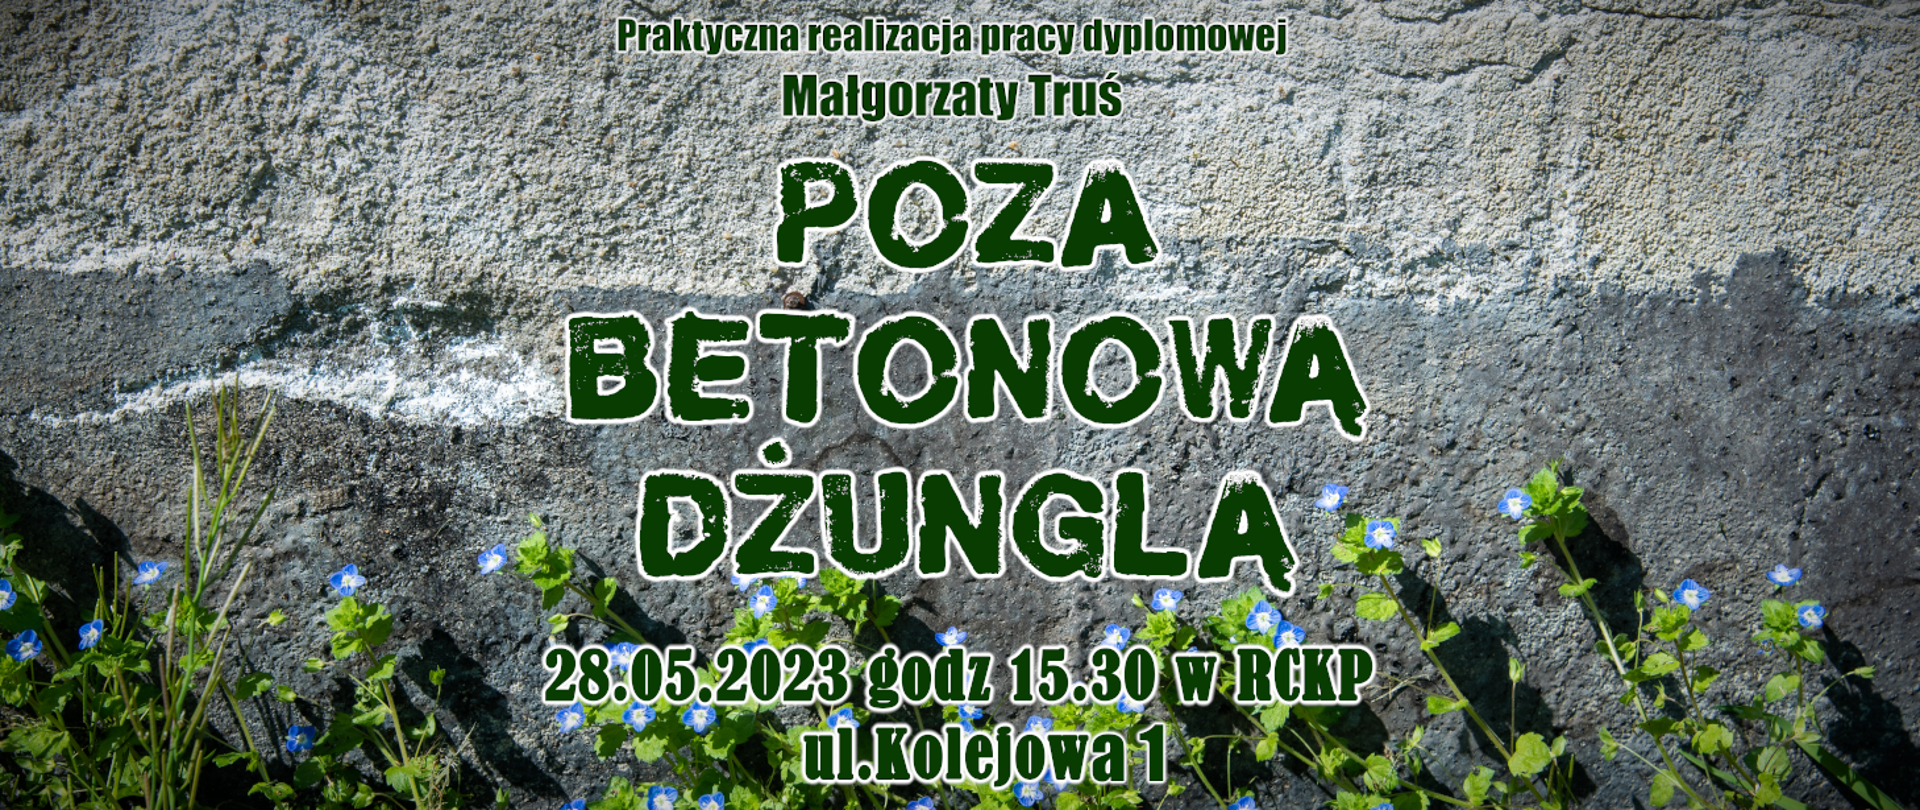 Plakat informujący o wystawie słuchaczki Małgorzaty Truś. Tłem plakatu jest betonowa ściana. Napisy zielone, a od dołu zielone listki z niebieskimi kwiatkami.